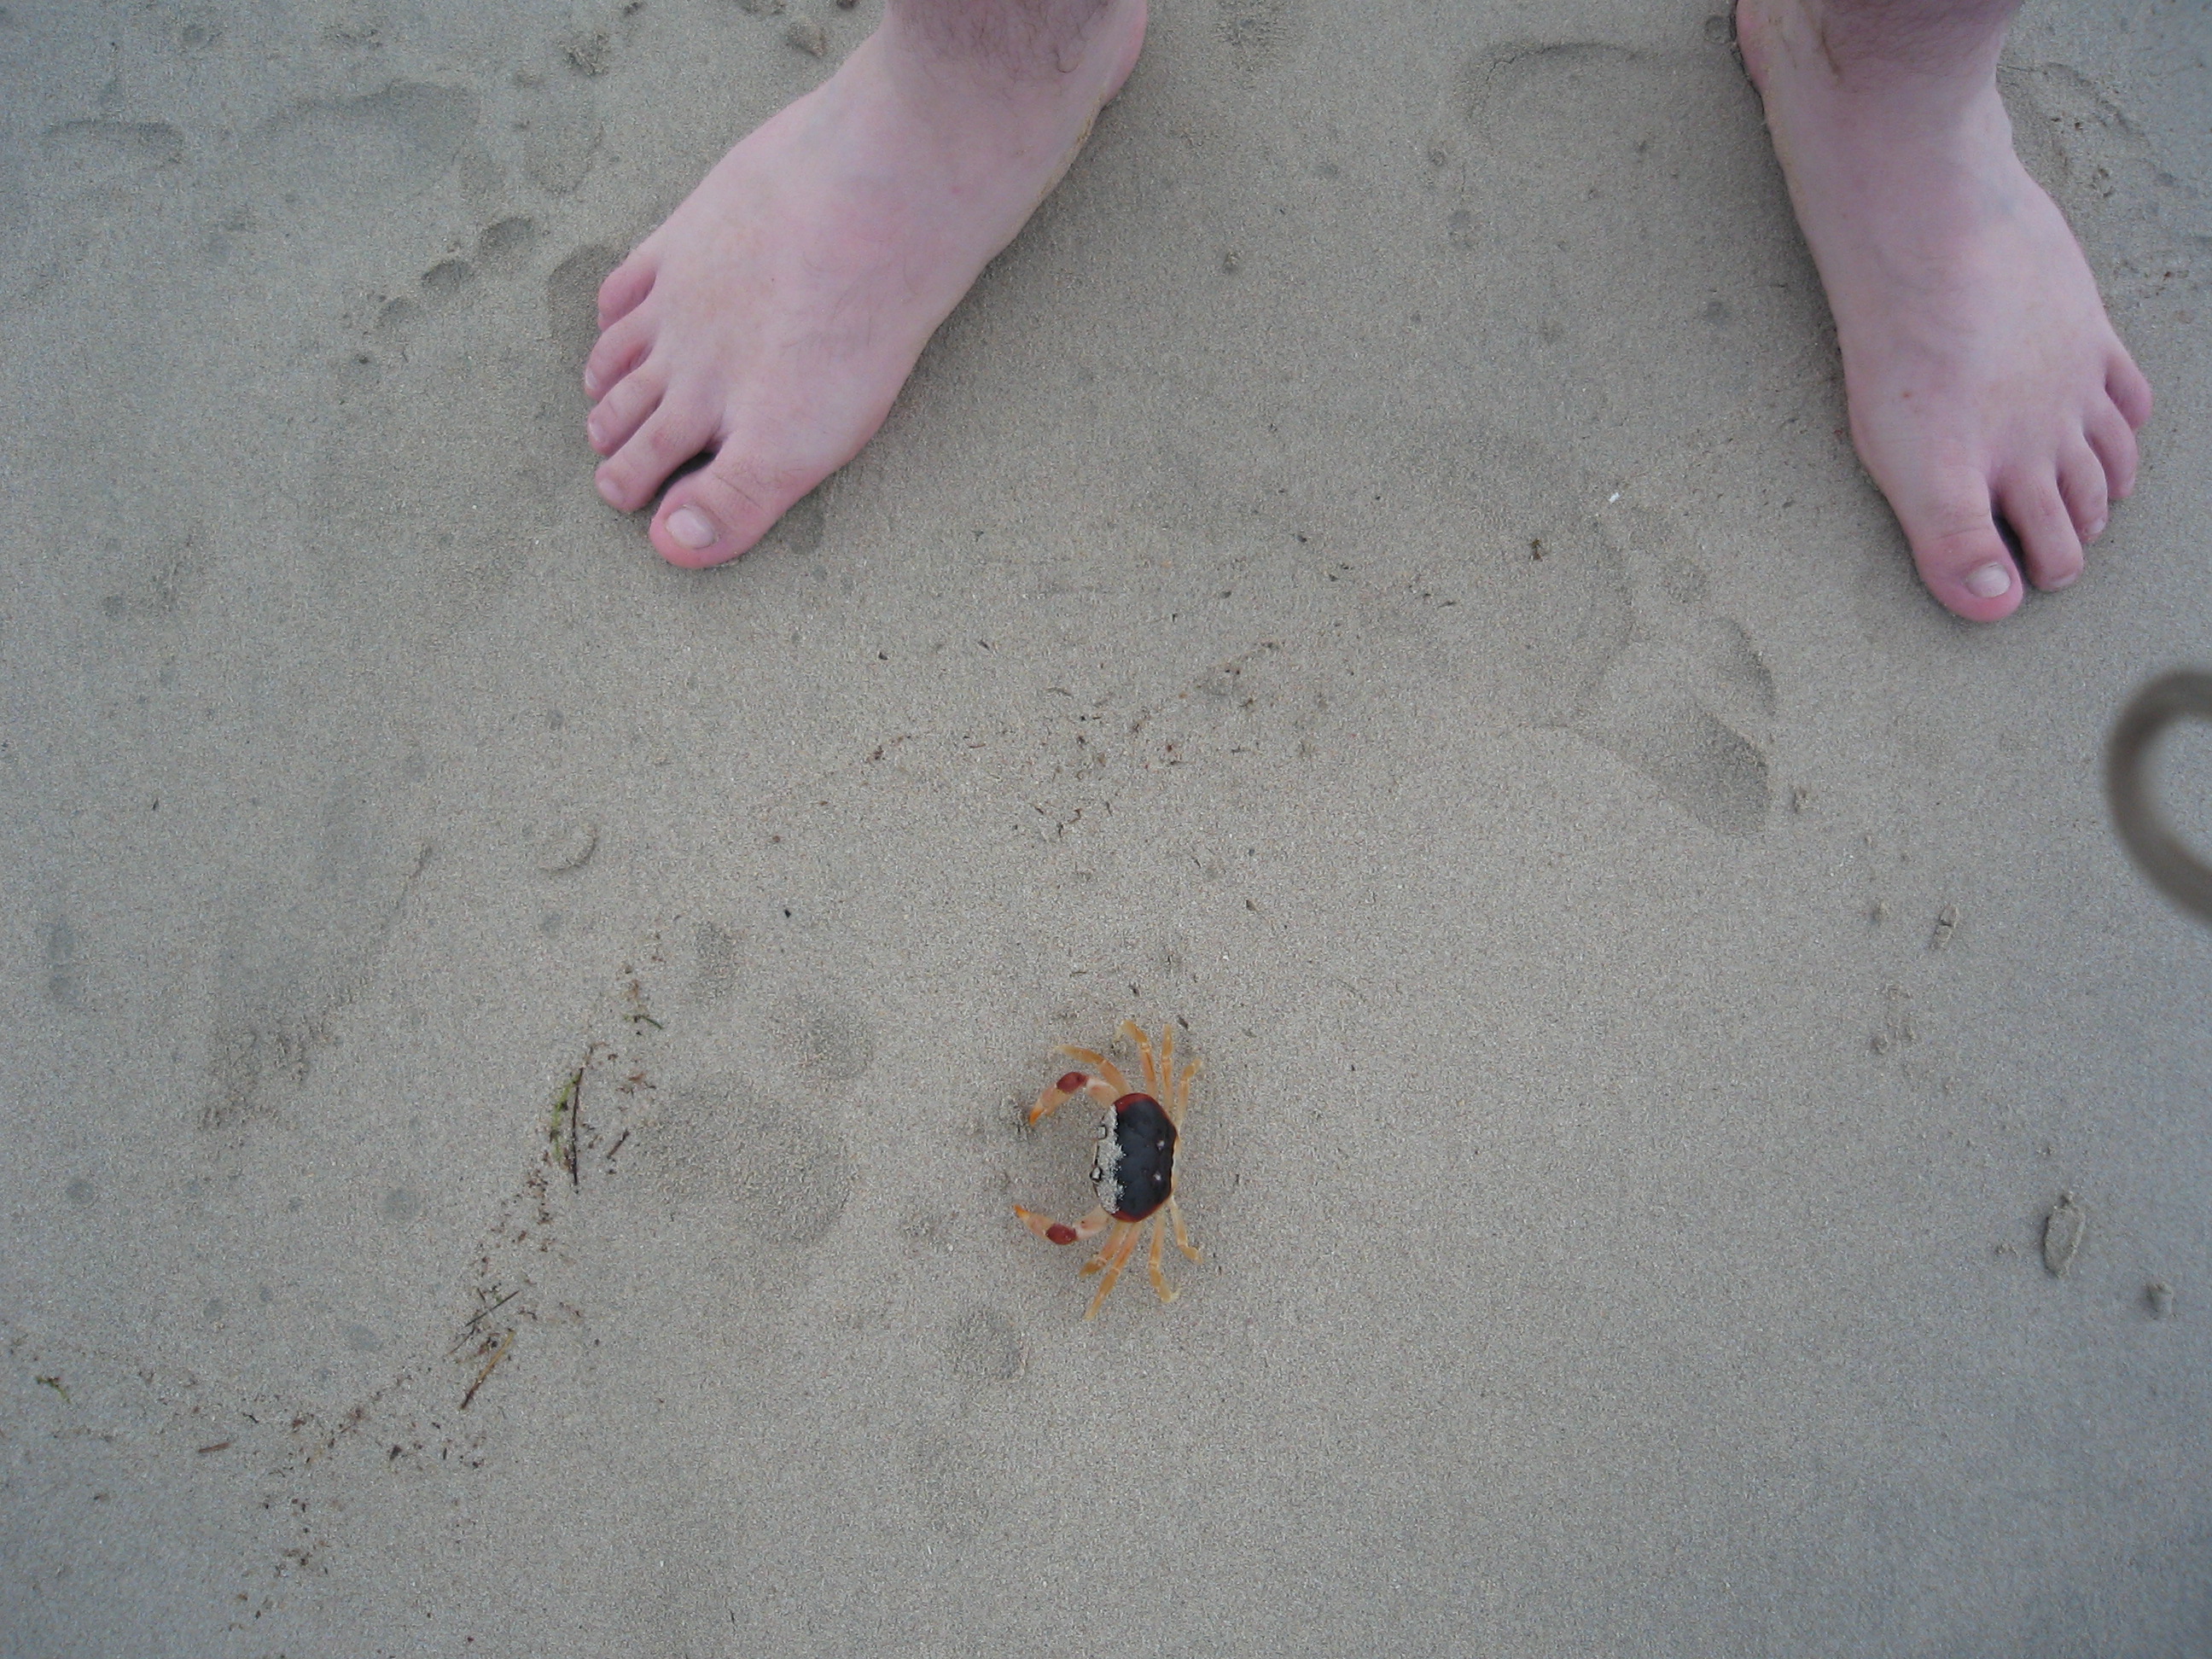 Steve on the Beach with BJ's feet